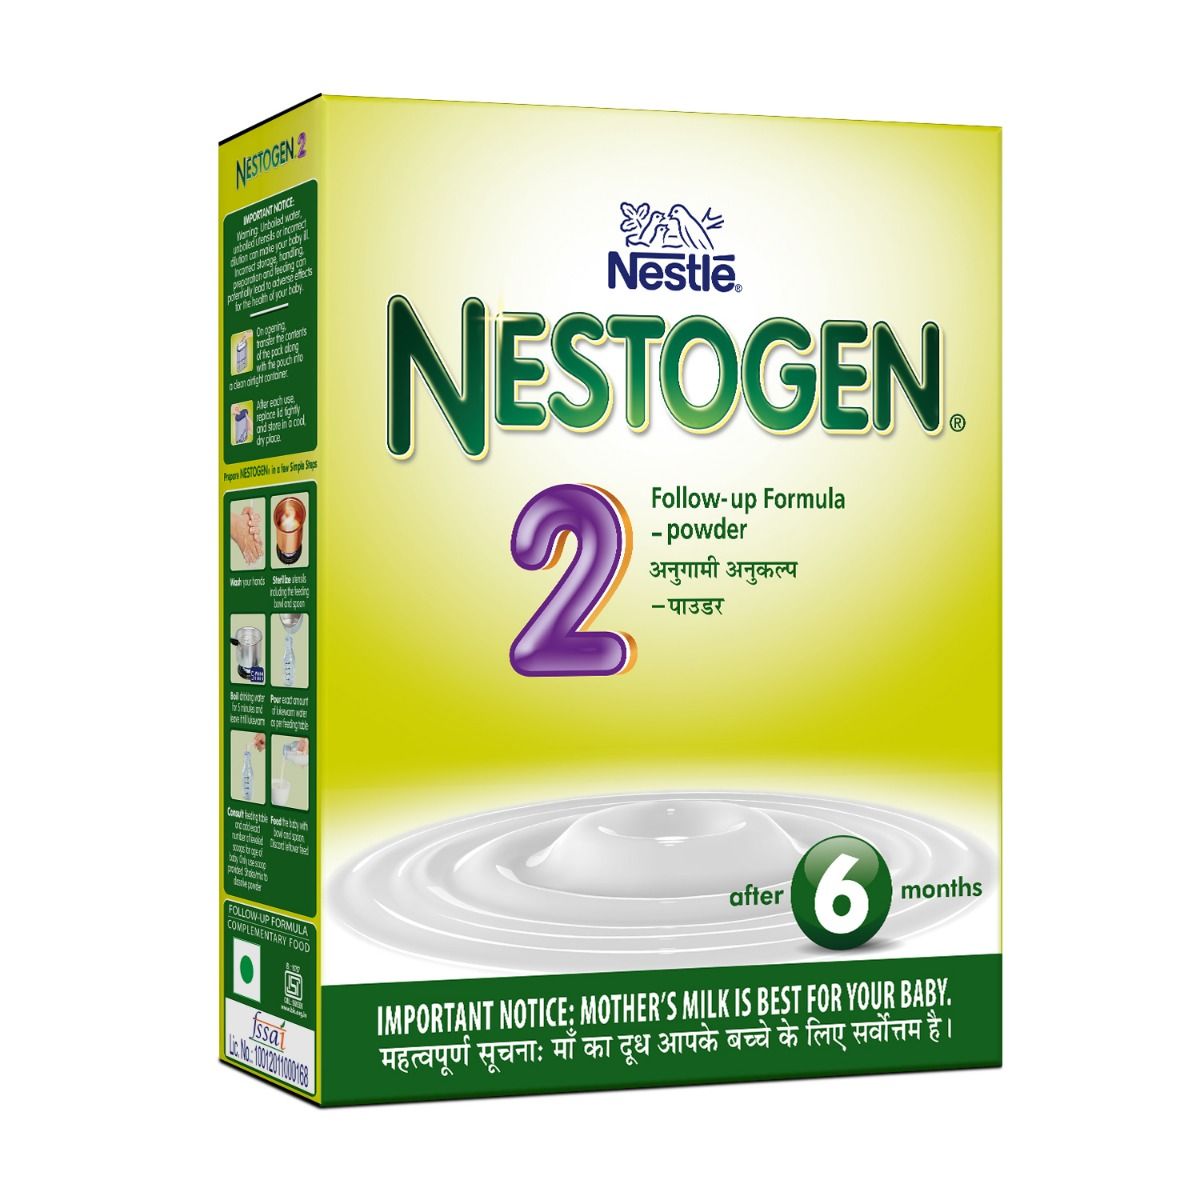 Nestle Nestogen Infant Formula Stage 2 (After 6 Months) Powder, 400 gm Refill Pack, Pack of 1 